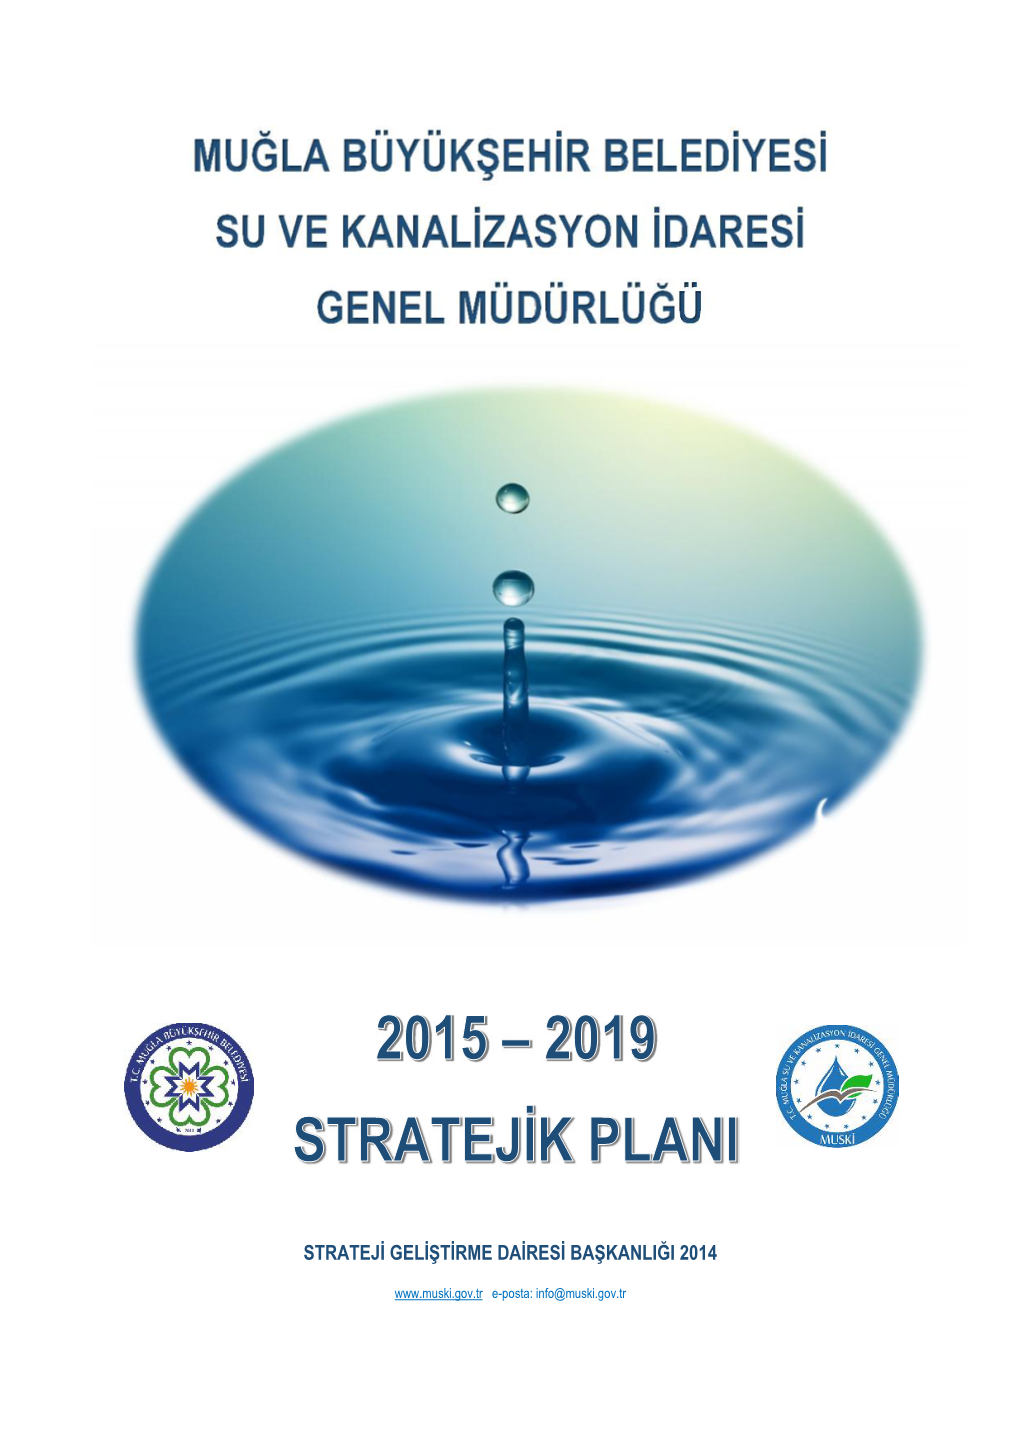 Muğla Büyükşehir Belediyesi Su Ve Kanalizasyon Idaresi Genel Müdürlüğü